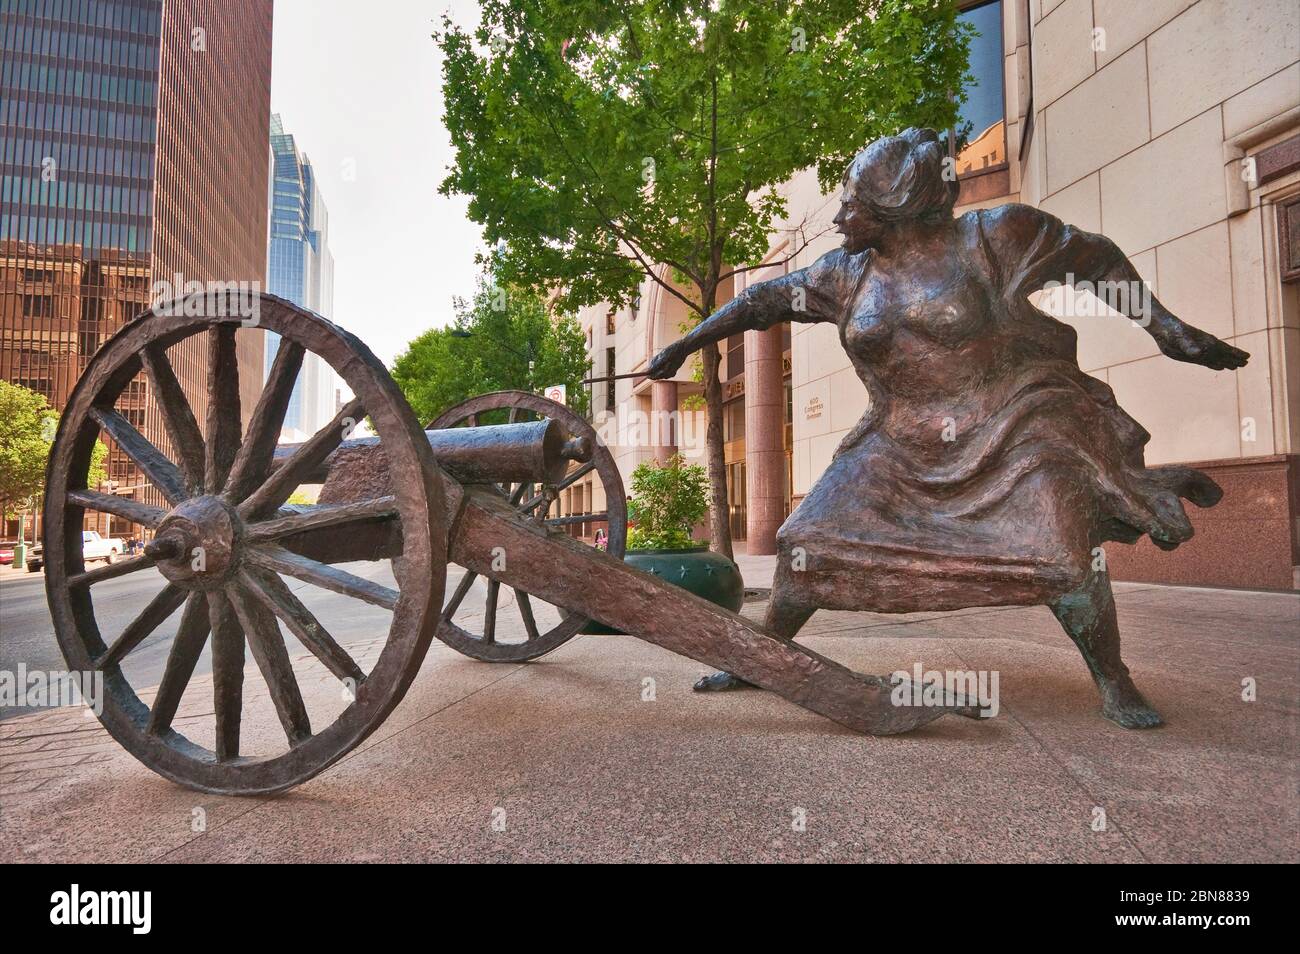 Angelina Eberly schießt eine Kanone, beginnt Archives war of 1842, Skulptur von Patrick Oliphant in der Congress Avenue, Downtown Austin, Texas, USA Stockfoto